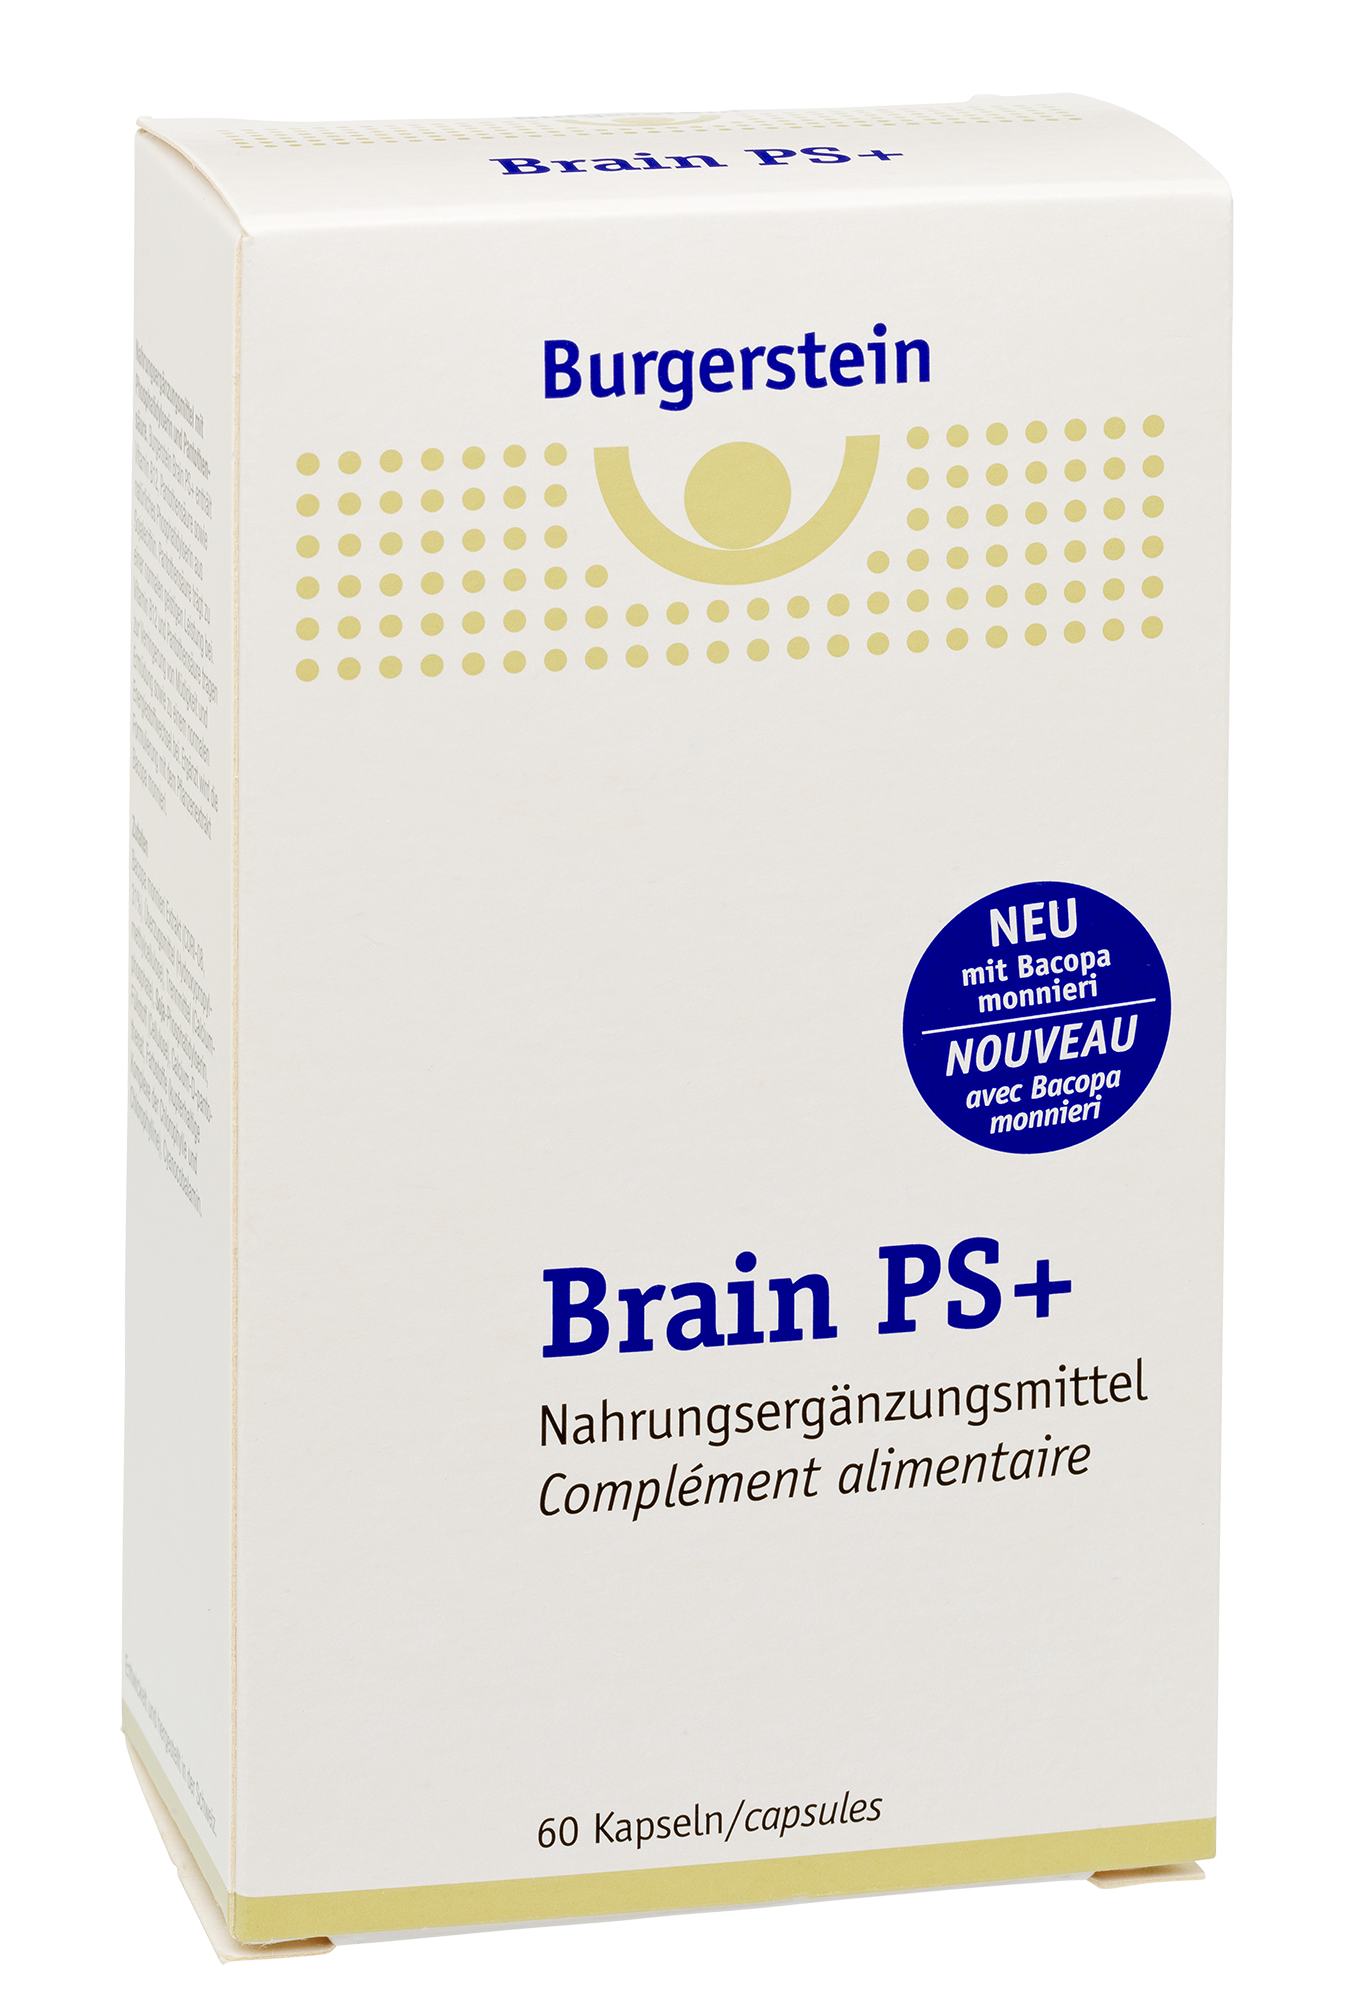 Burgerstein Brain PS+